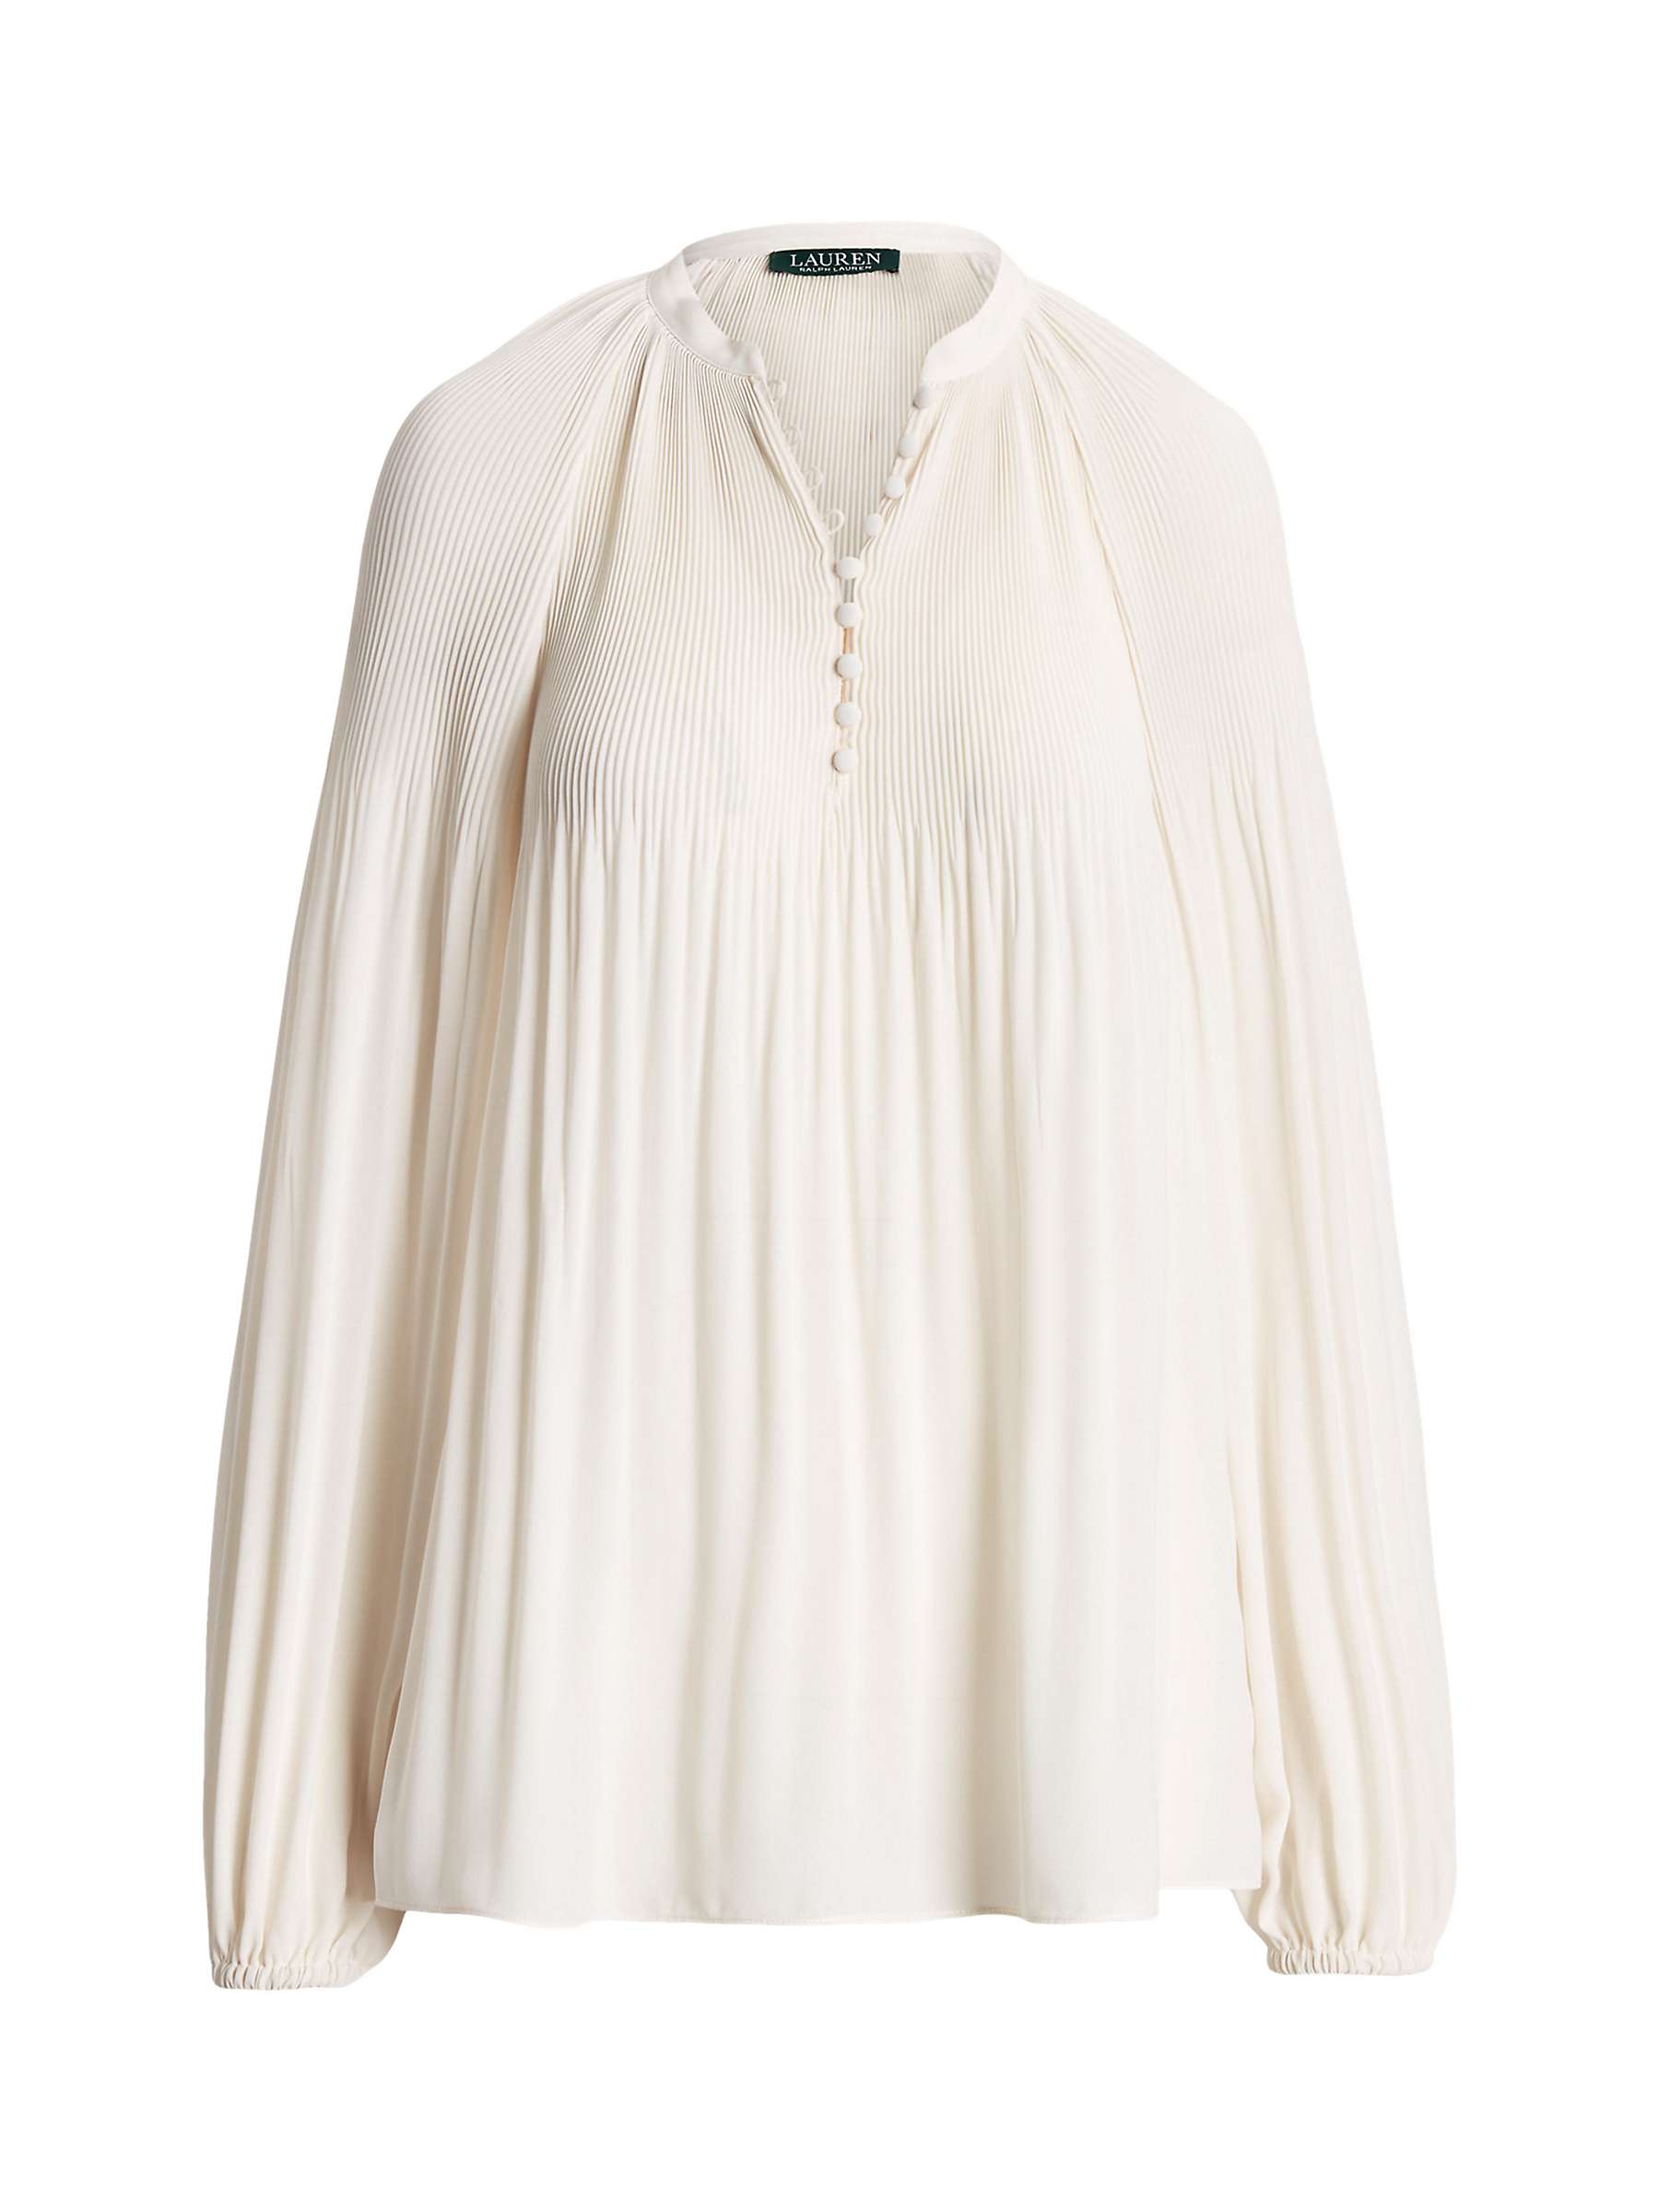 Buy Lauren Ralph Lauren Versilla Top, White Online at johnlewis.com